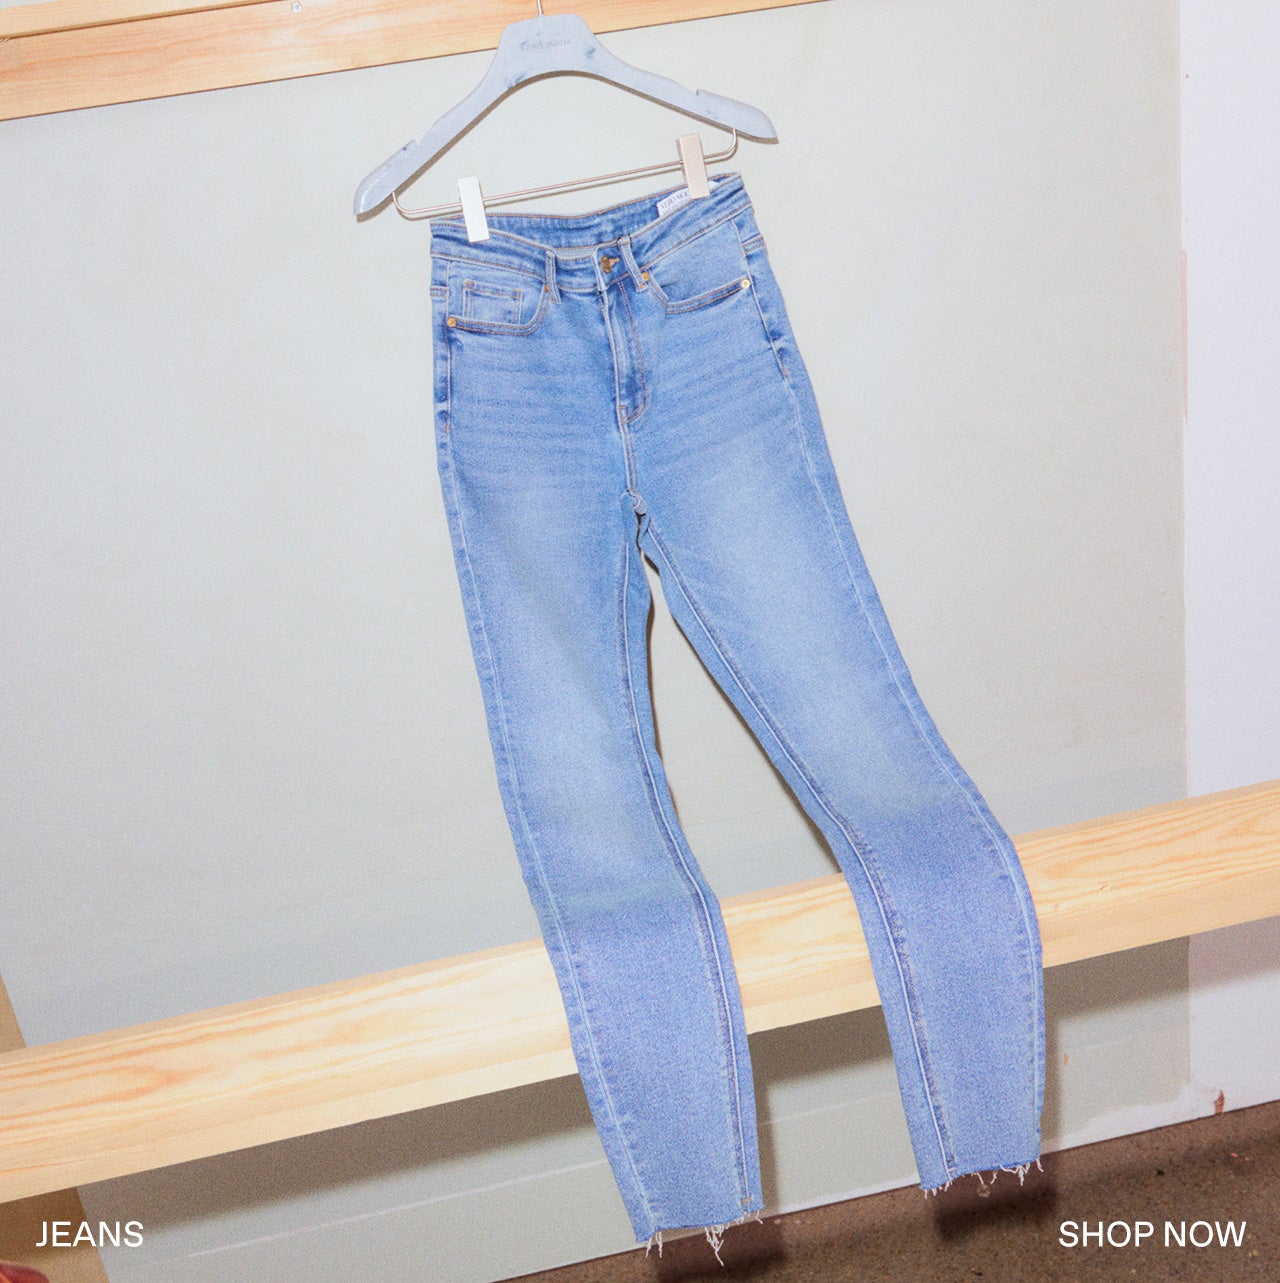 ヴェロモーダ Vero Moda high rise wide leg jeans in black wash